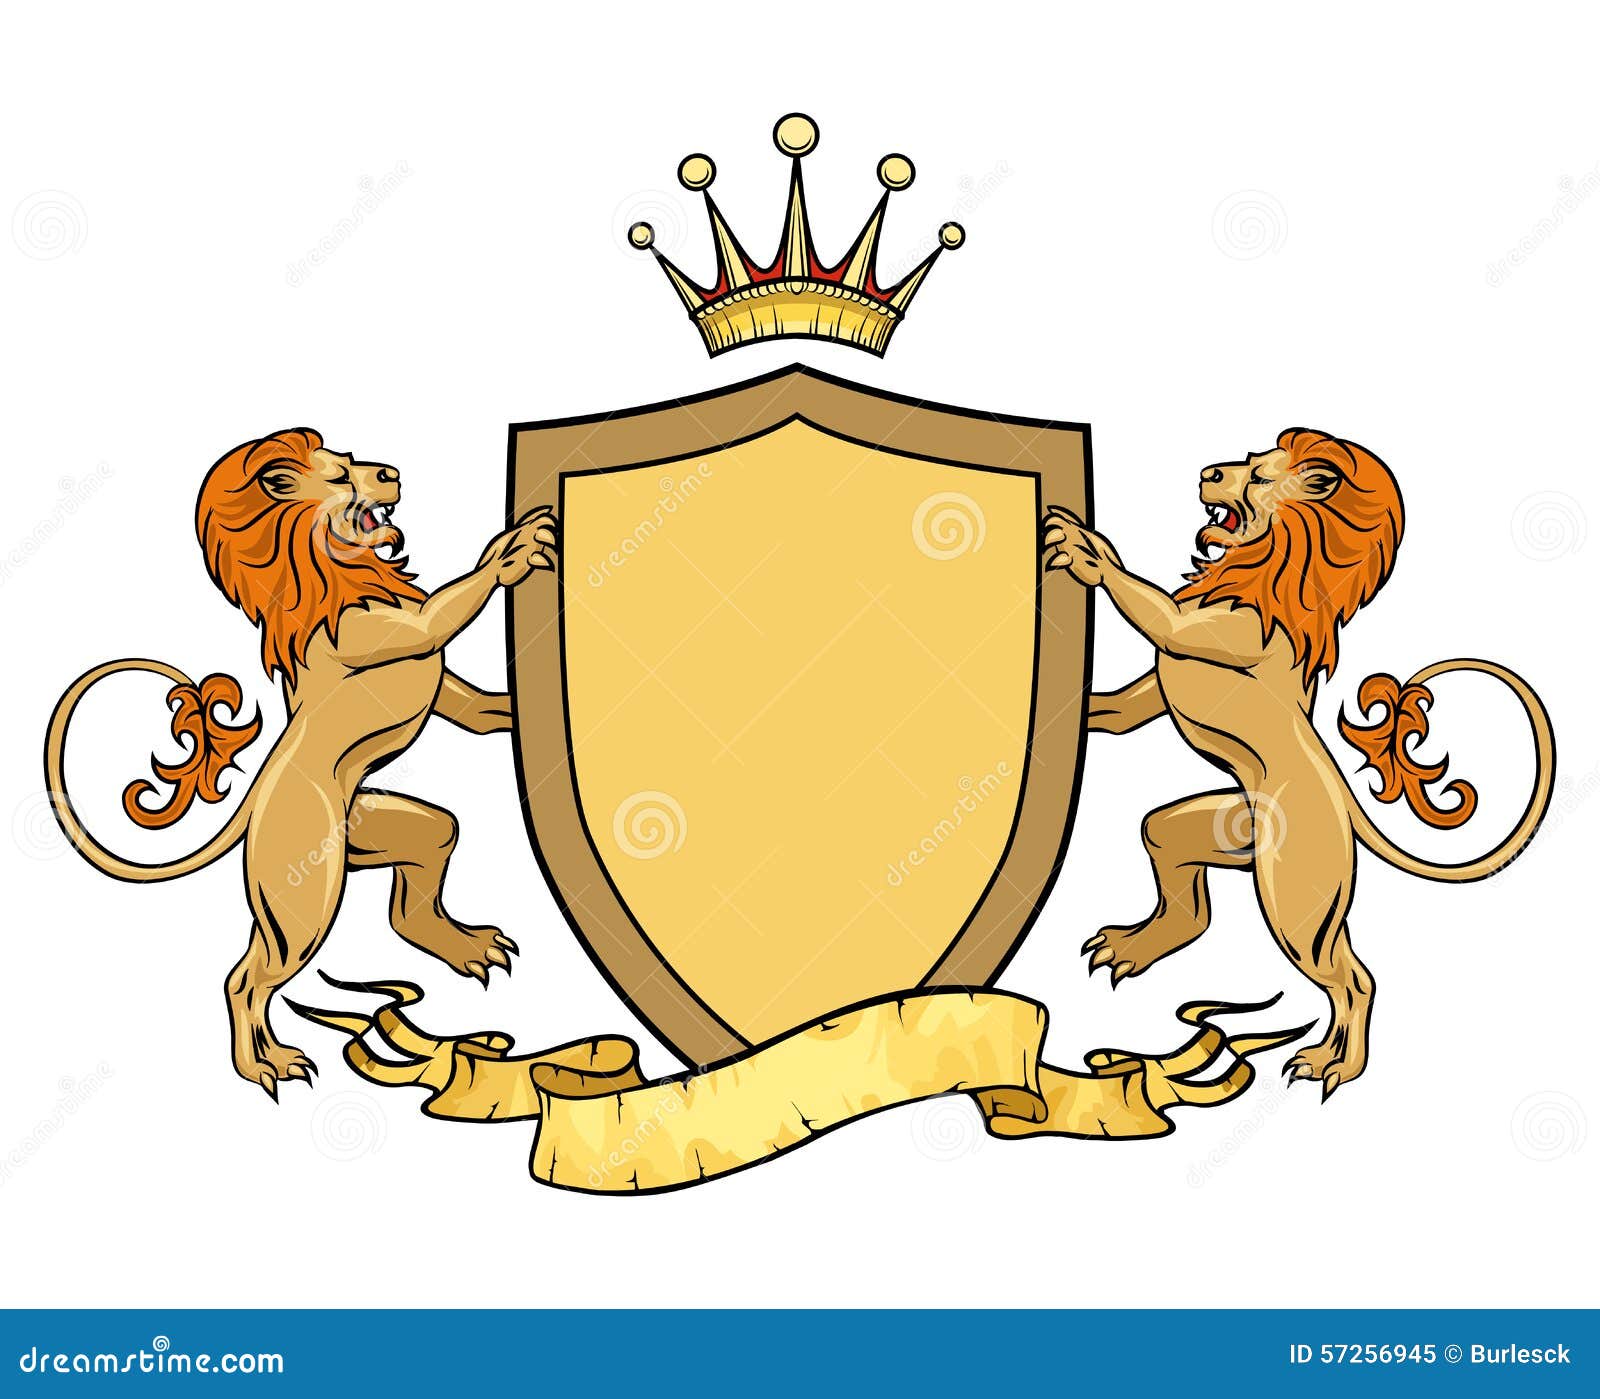 Герб со львом какой город. Герб семьищитодержатели львы. Геральдический Лев на щите. Щит со львом. Геральдический щит со львами и короной.